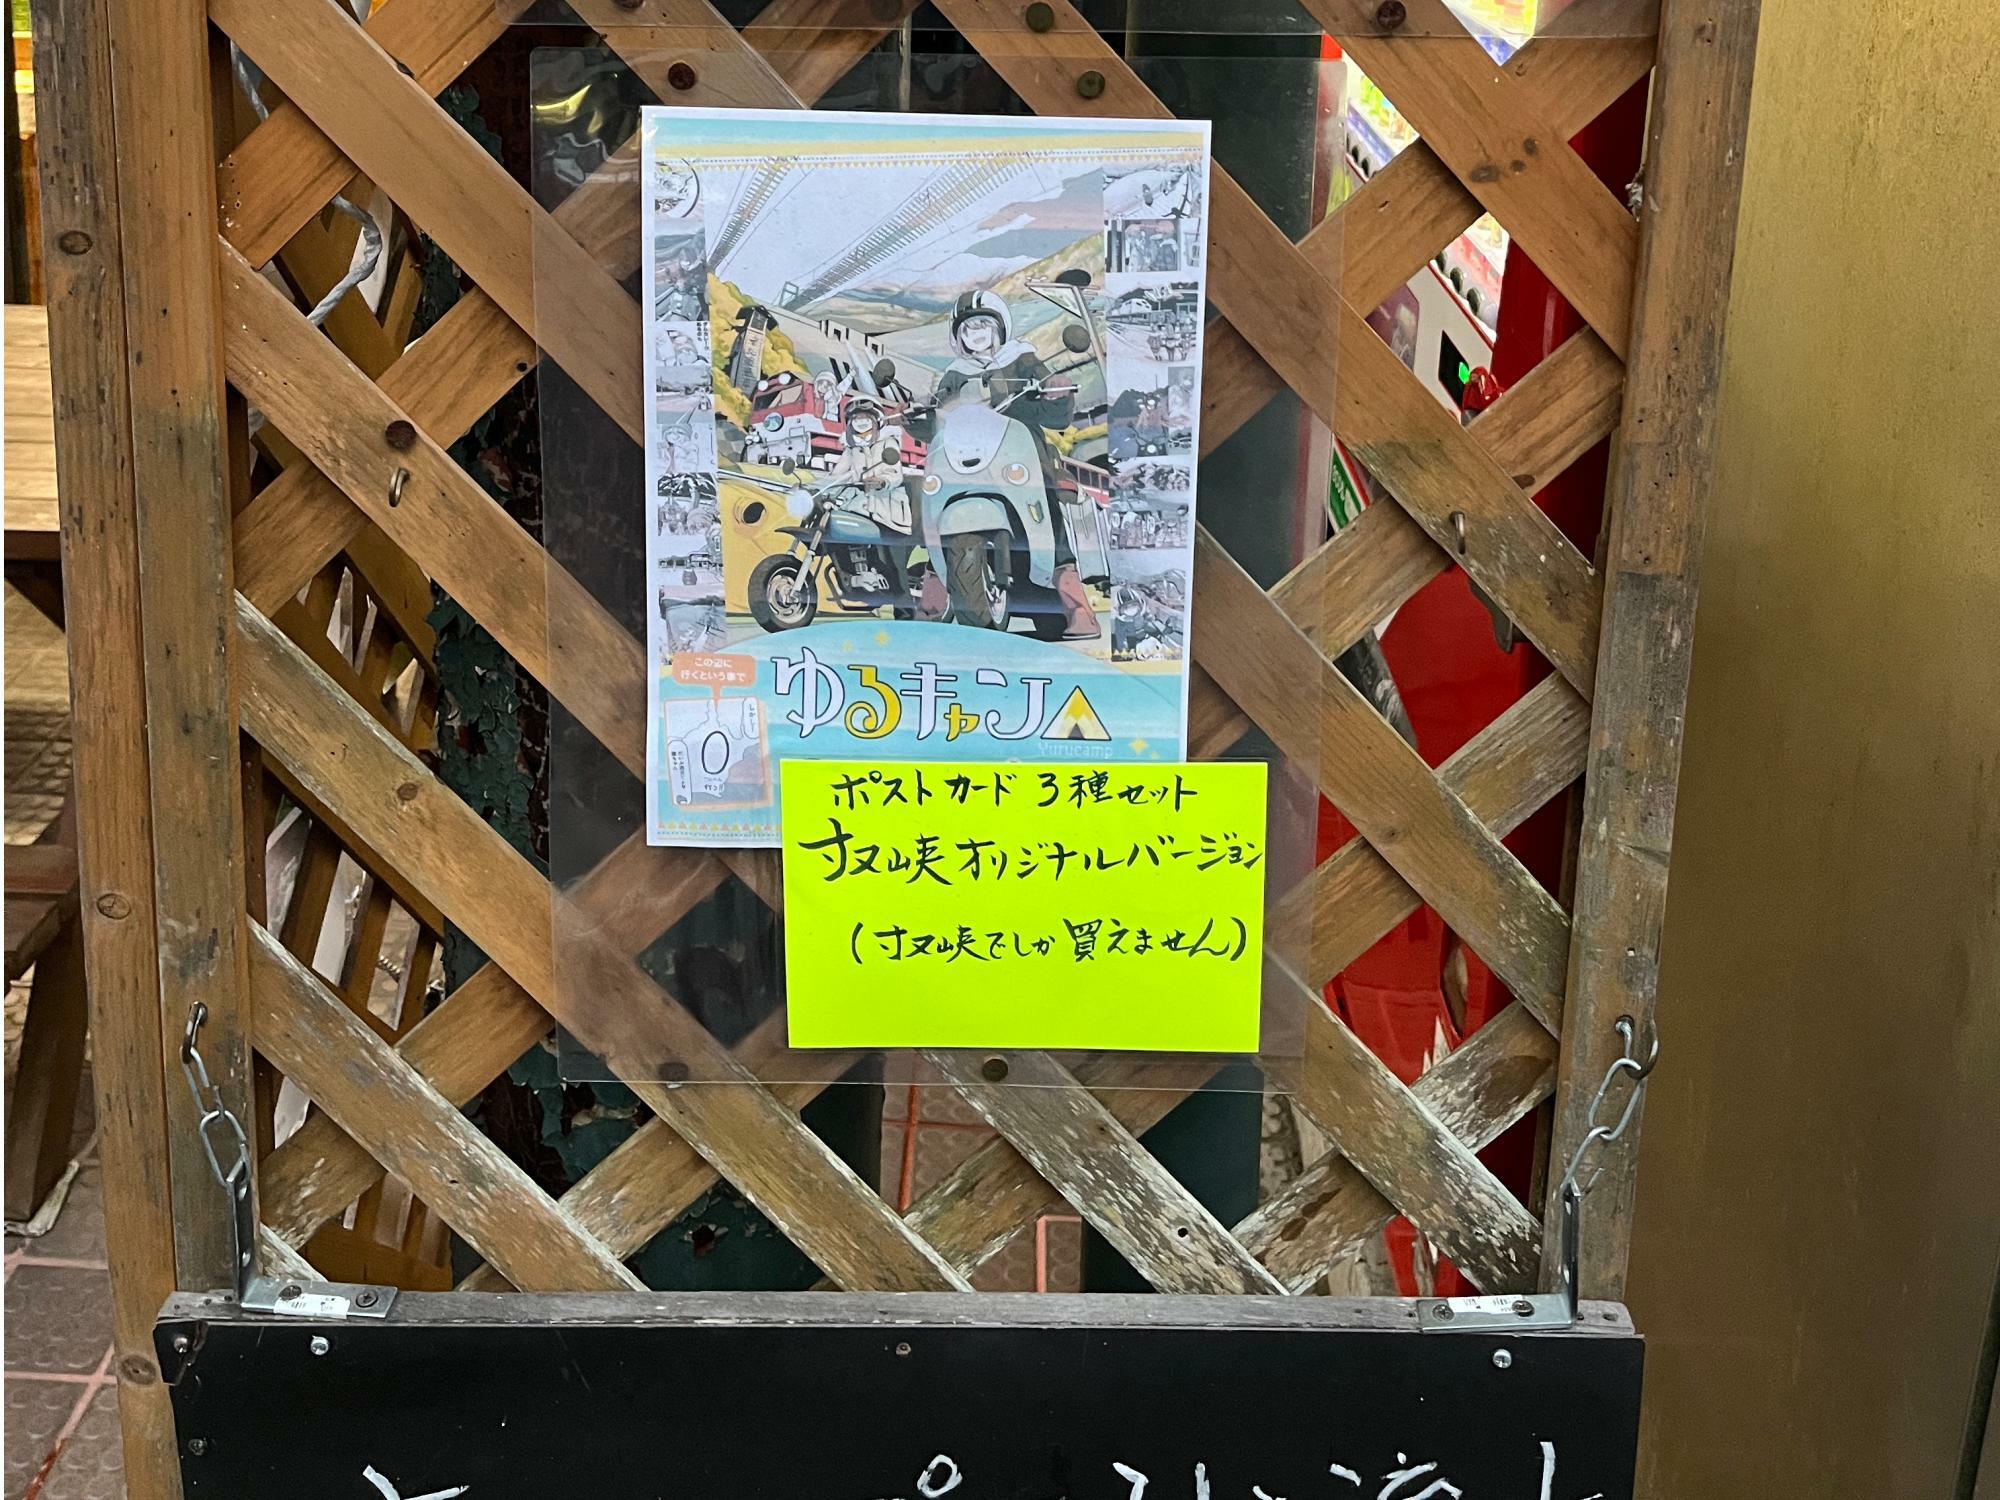 『ゆるキャン△』TVアニメ3期の主要な舞台で、今回のスタンプラリーのスポットにもなっている川根本町の寸又峡温泉では、現地限定のグッズも販売されている。静岡駅からでも2時間以上のアクセスを要する秘境だ